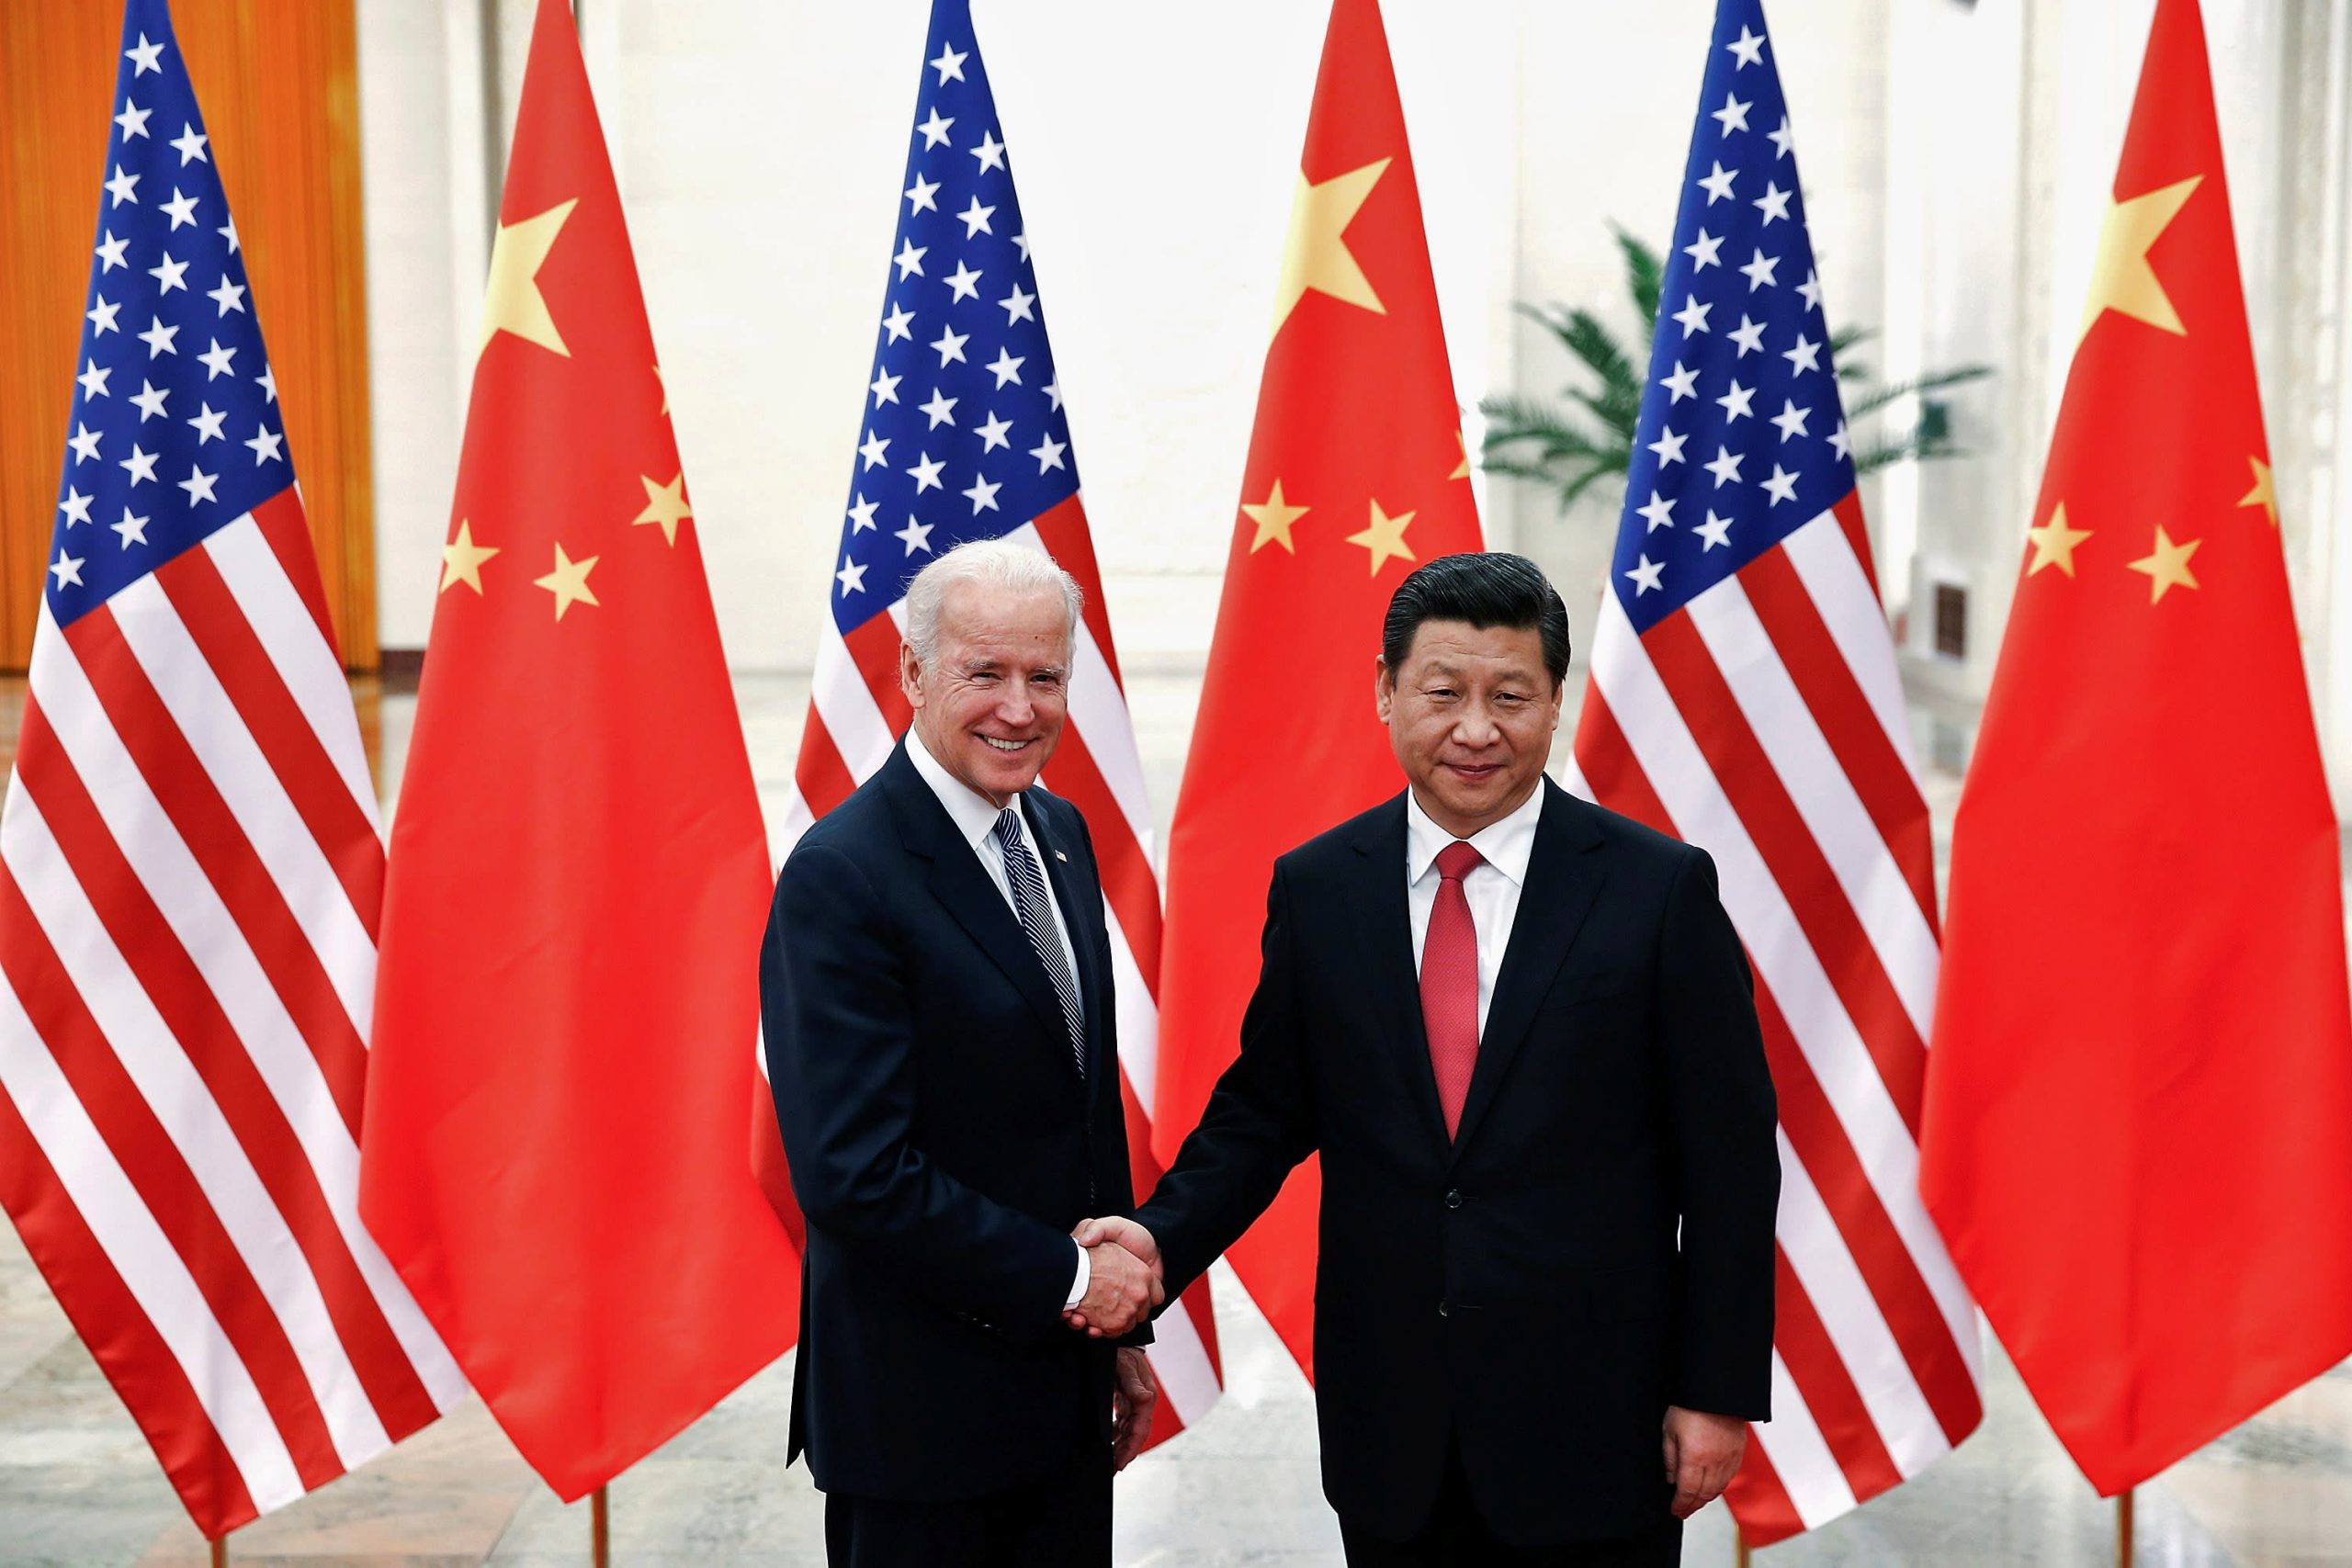 Cumbre virtual de Biden-Xi programada para el lunes por la noche mientras aumentan las tensiones en China